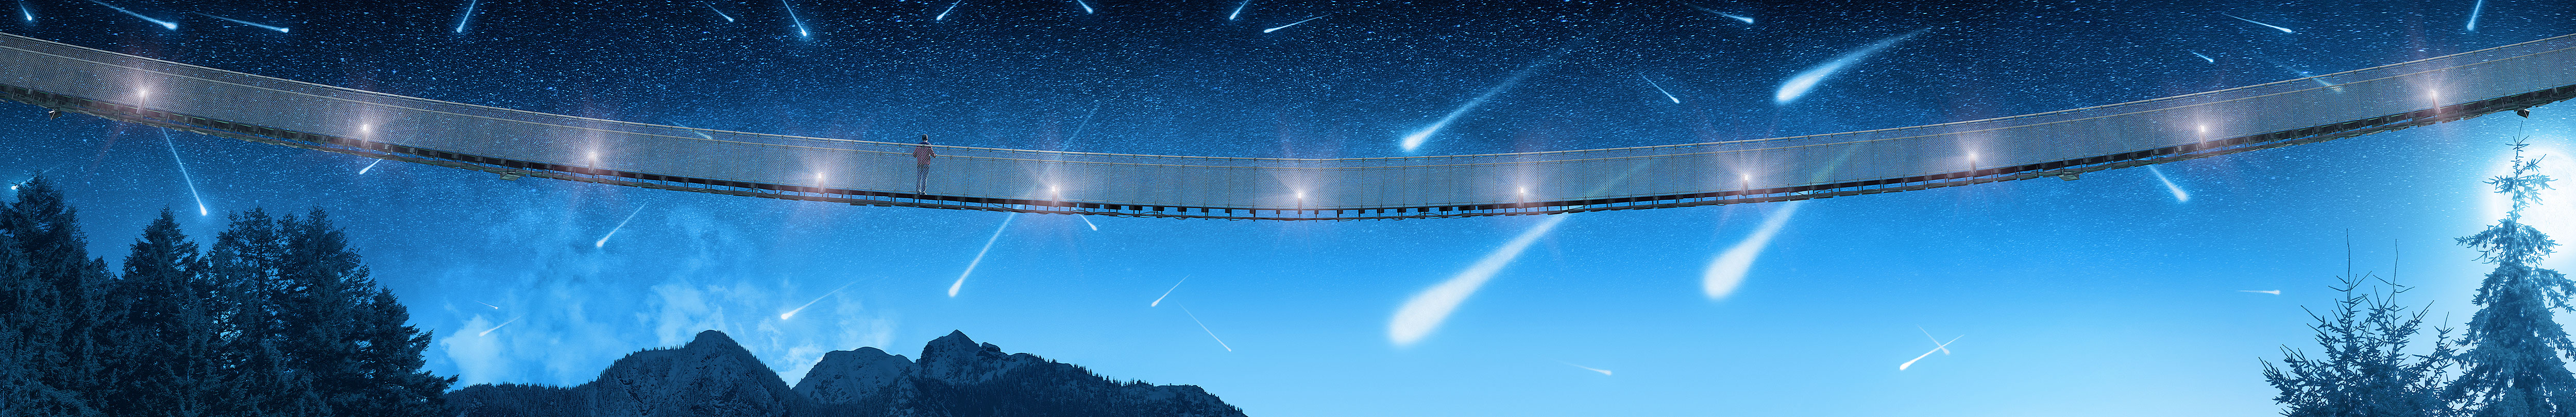 Capilano Suspension Bridge - Shooting Stars